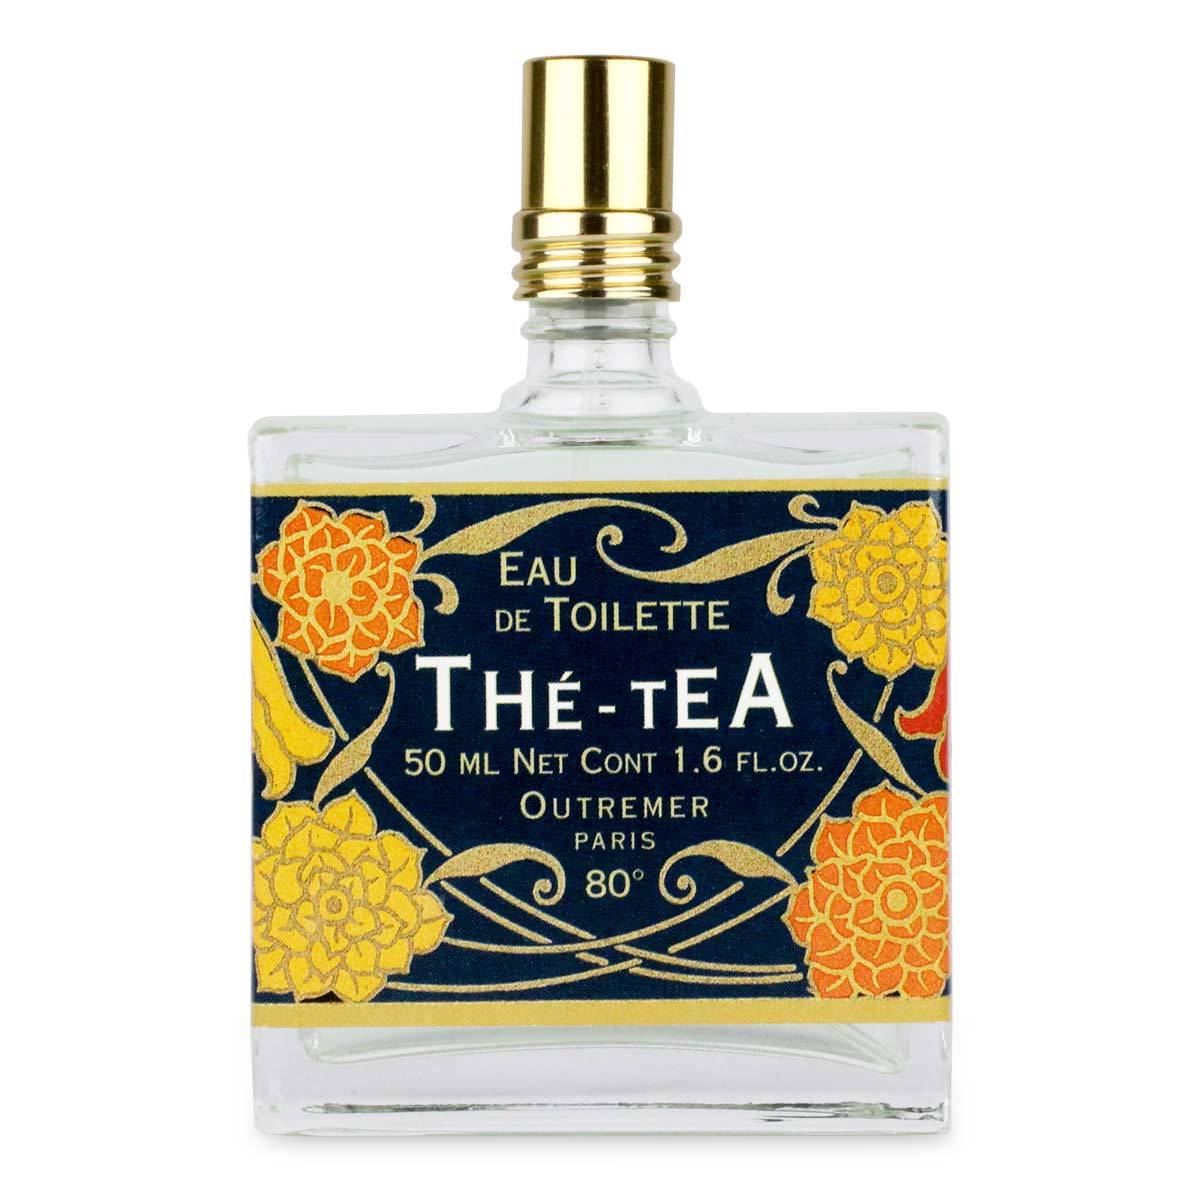 Primary image of The (Tea) Eau de Toilette